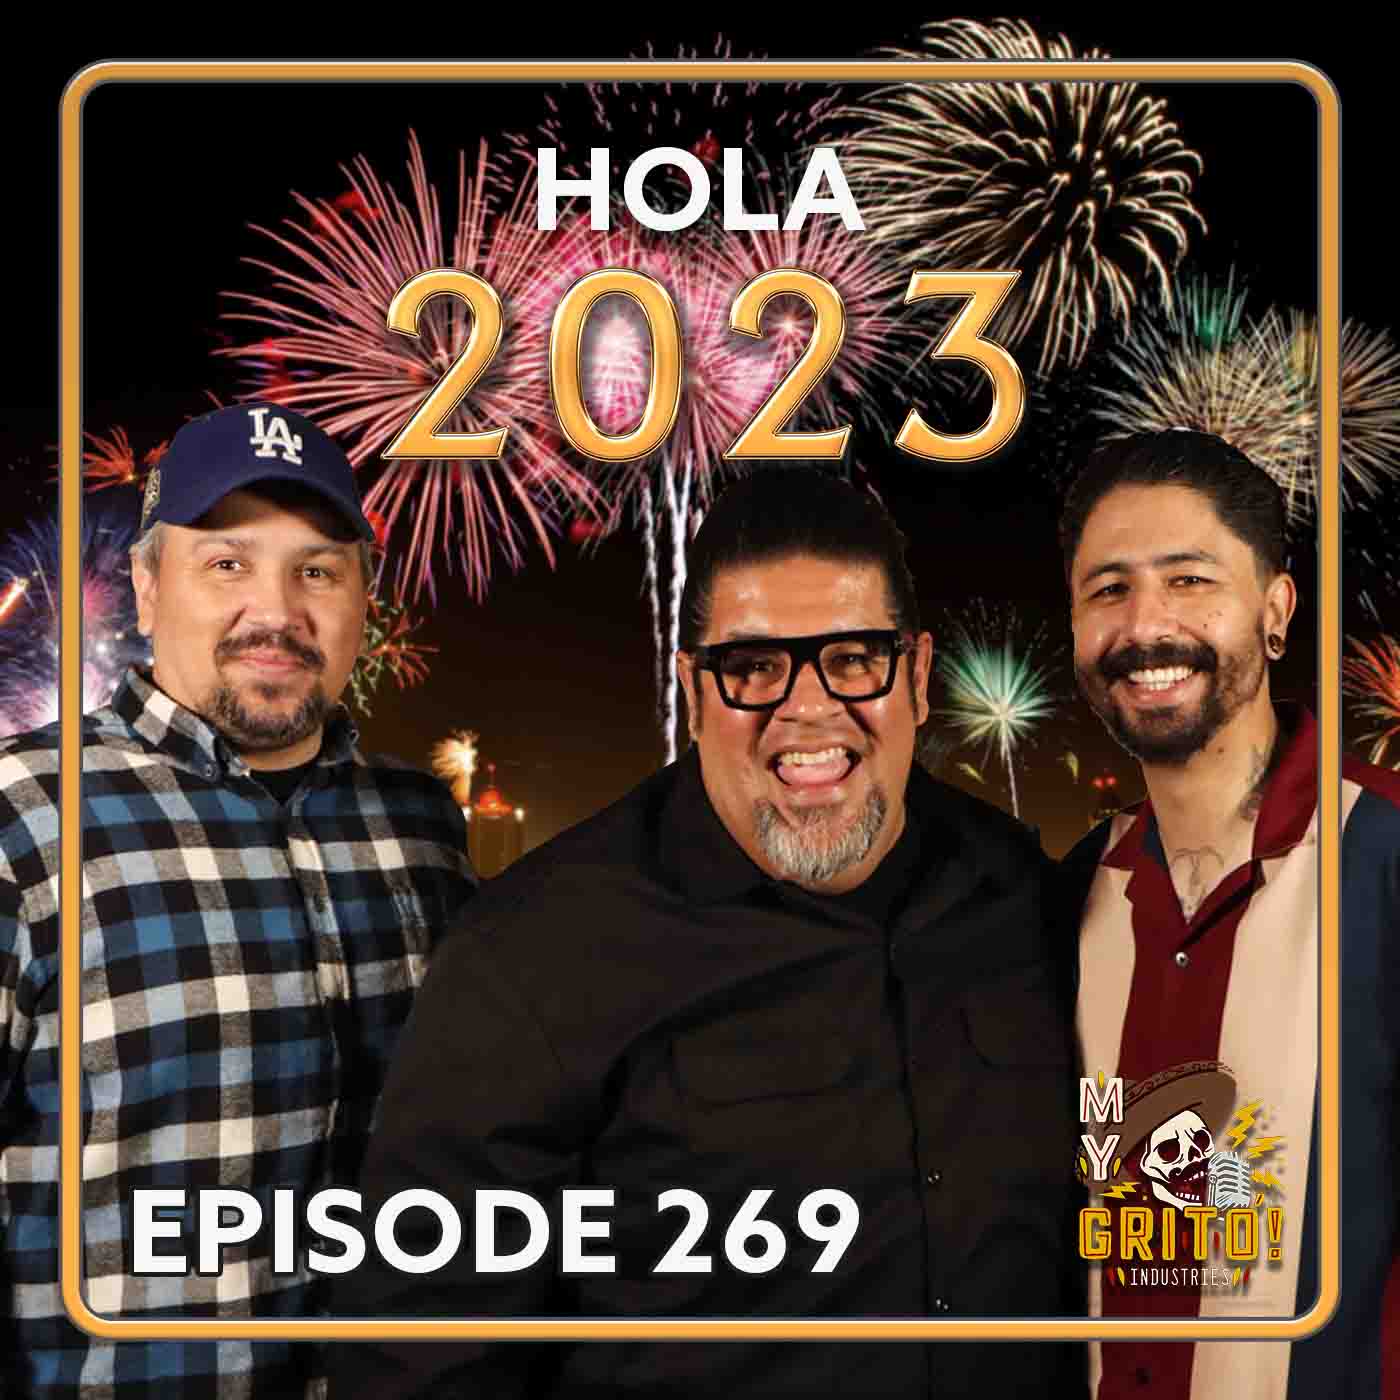 Episode 269 – Hola 2023